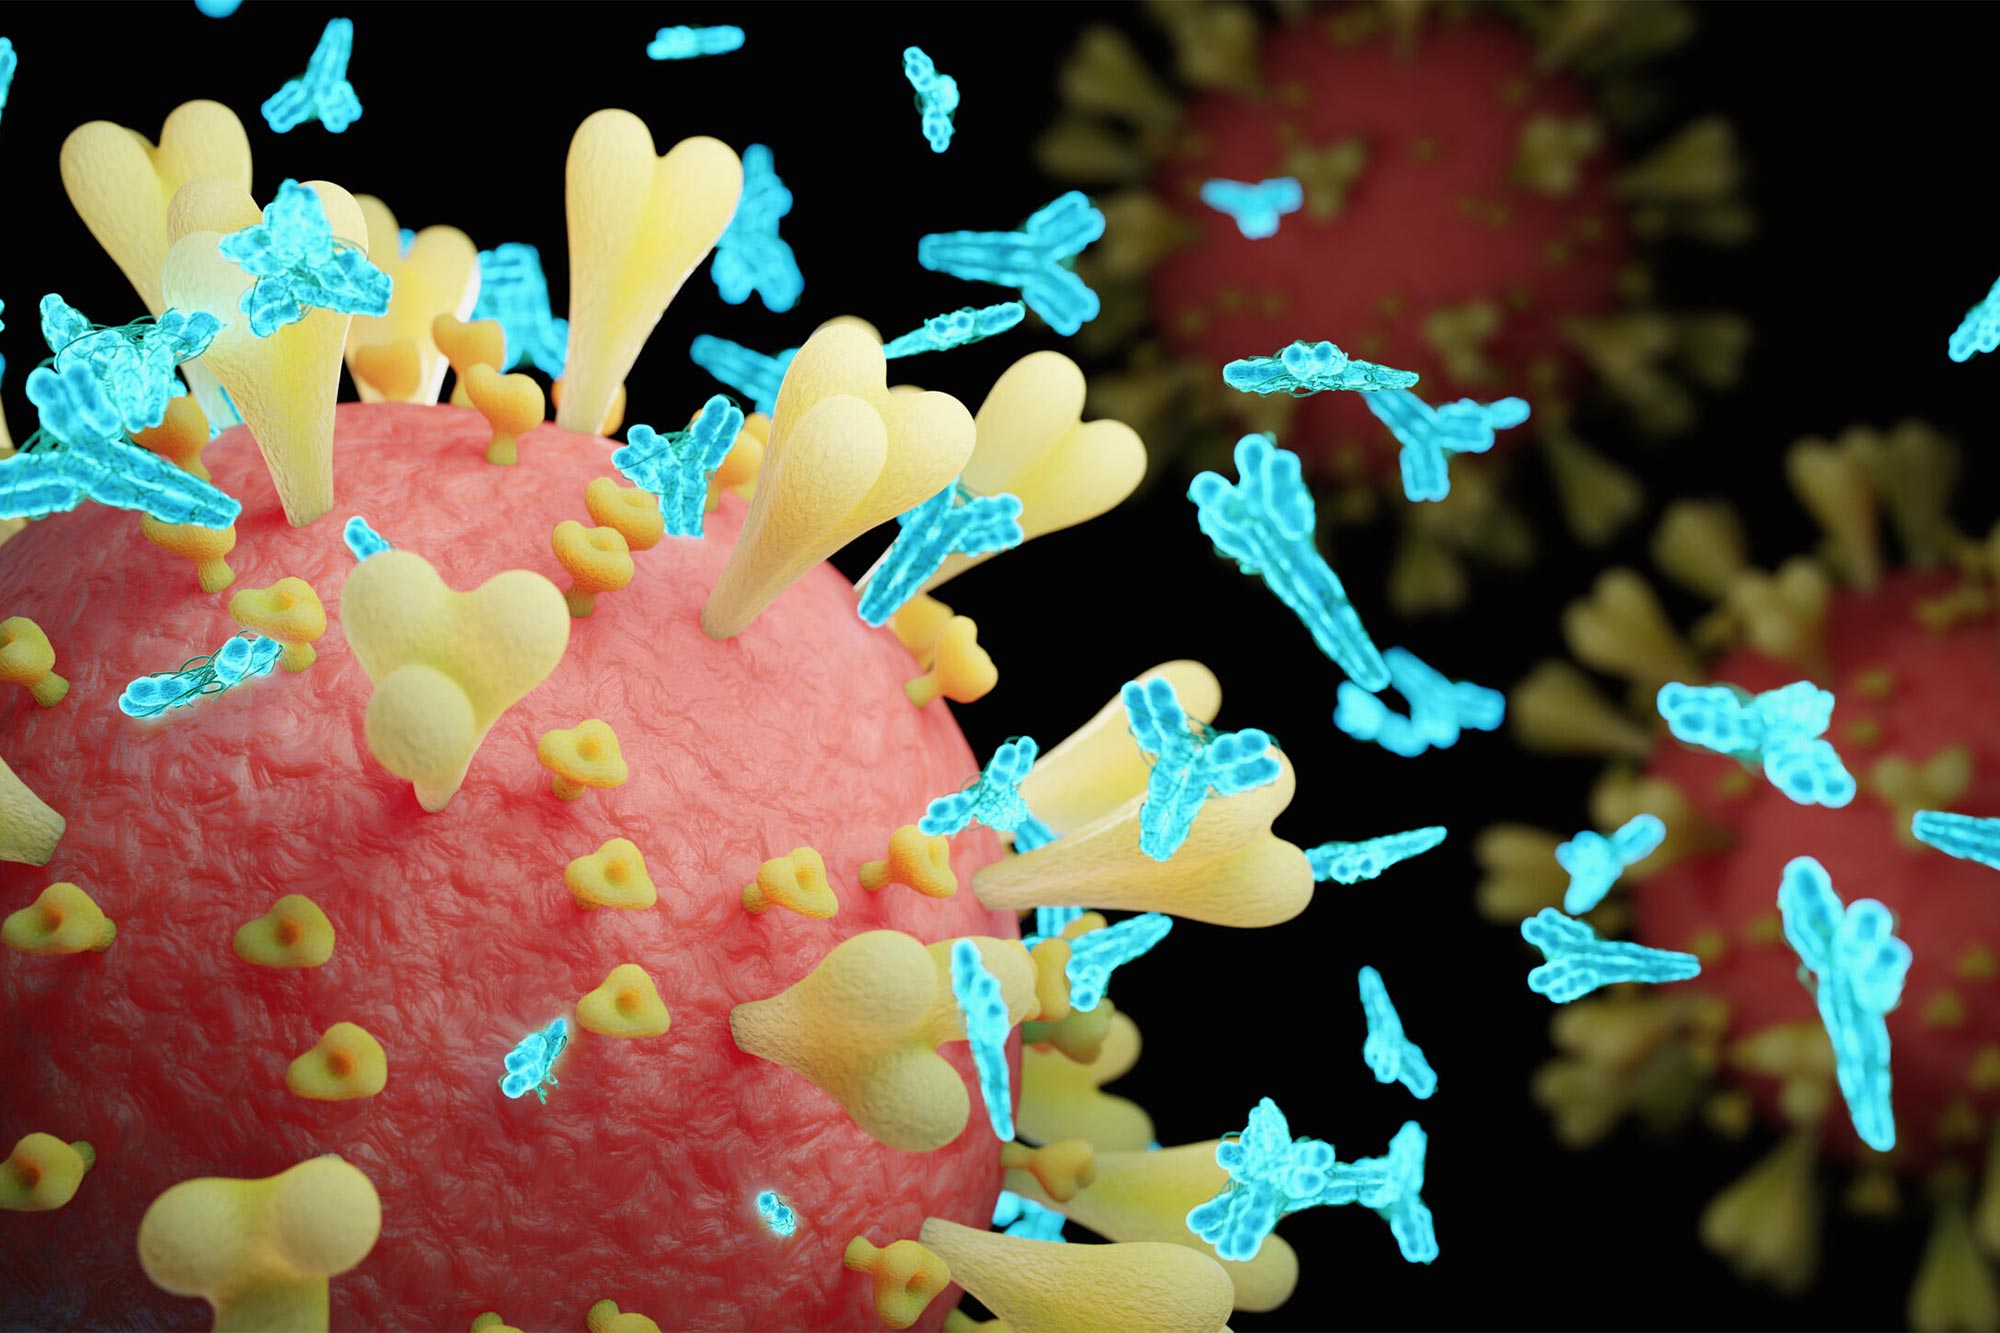 Exposure to Harmless Coronaviruses Boosts COVID-19 Immunity - SciTechDaily